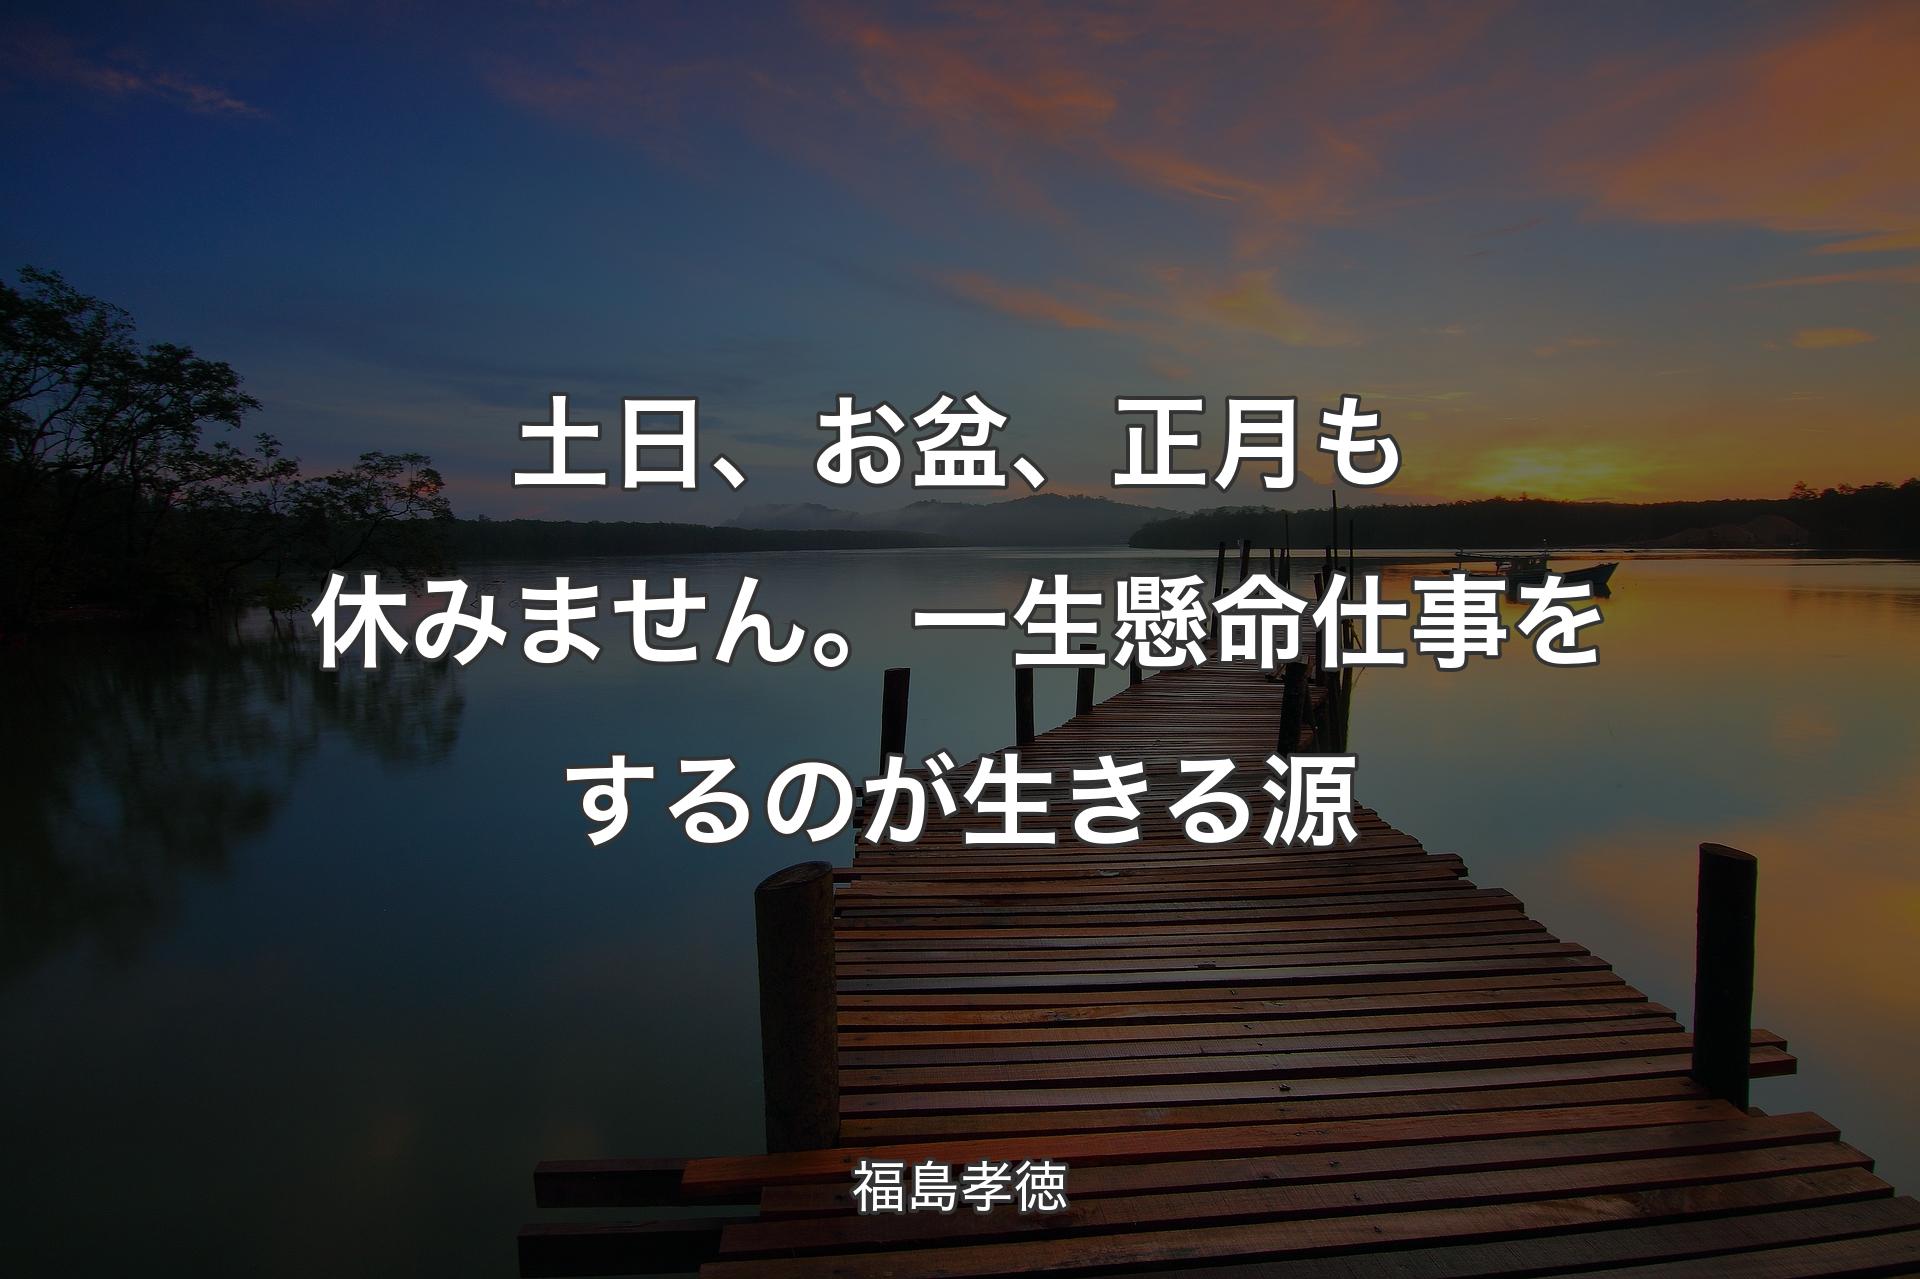 【背景3】土日、お盆、正月も休みません。一生懸命仕事をするのが生きる源 - 福島孝徳